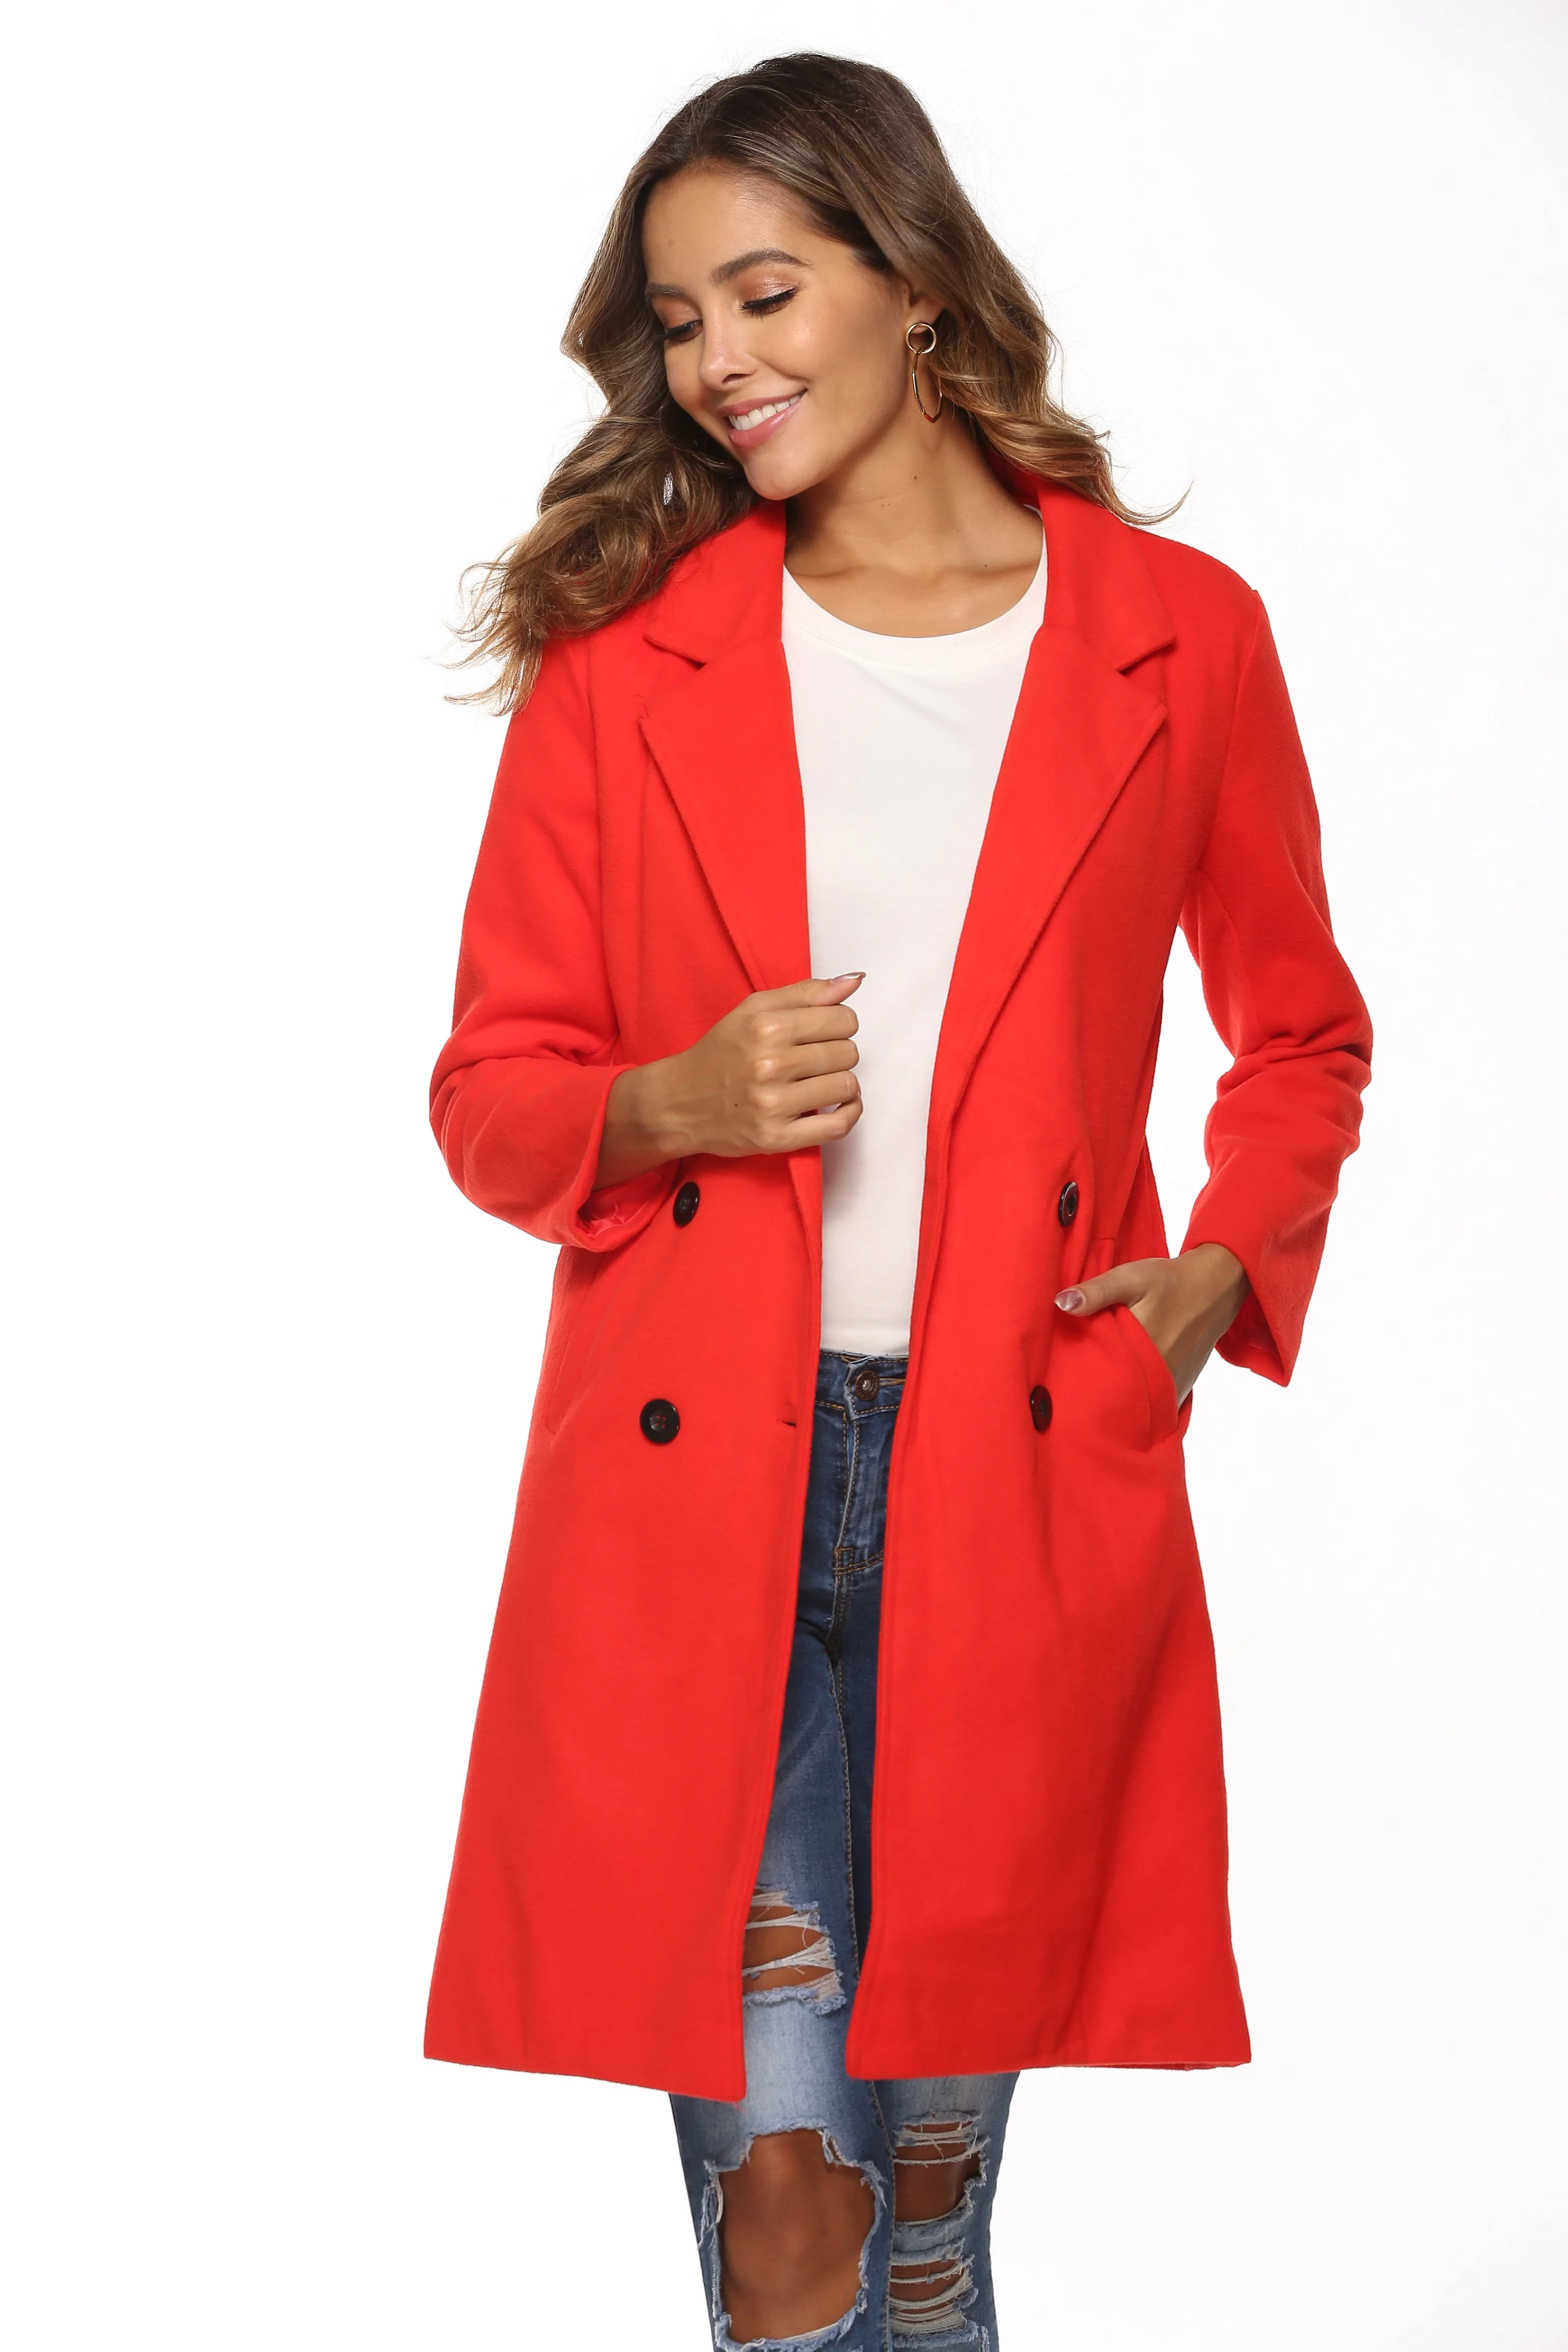 Женское осенне-зимнее шерстяное пальто, длинный рукав, отложной воротник, оверсайз-блейзер, верхняя одежда, куртка, элегантное пальто свободного размера плюс